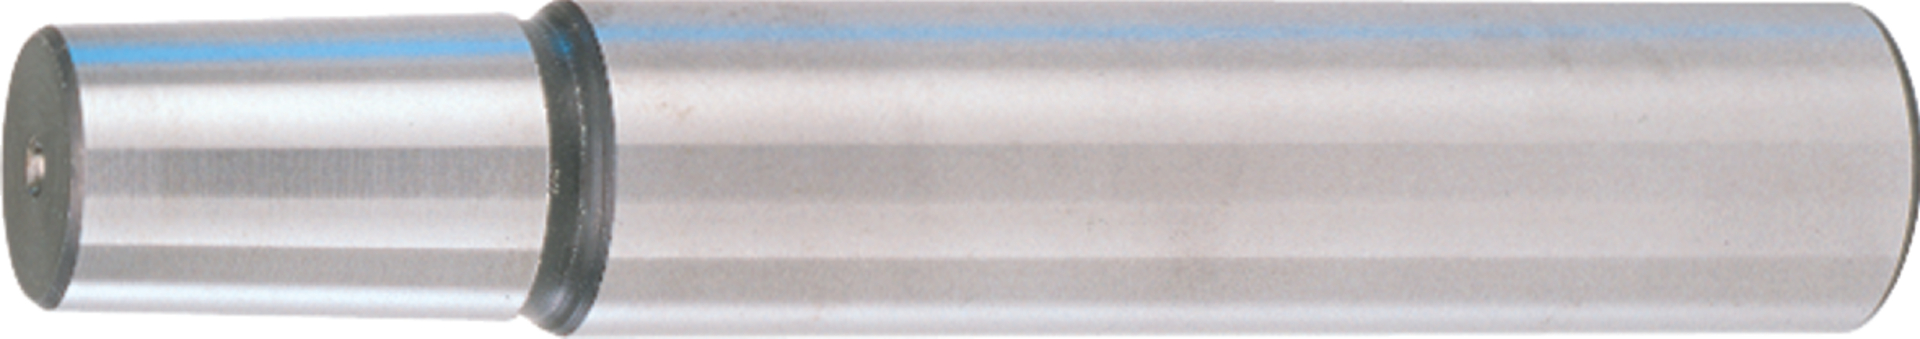 Zylinderschaft für Bohrfutter D 16x50 mm, B 16 Albrecht